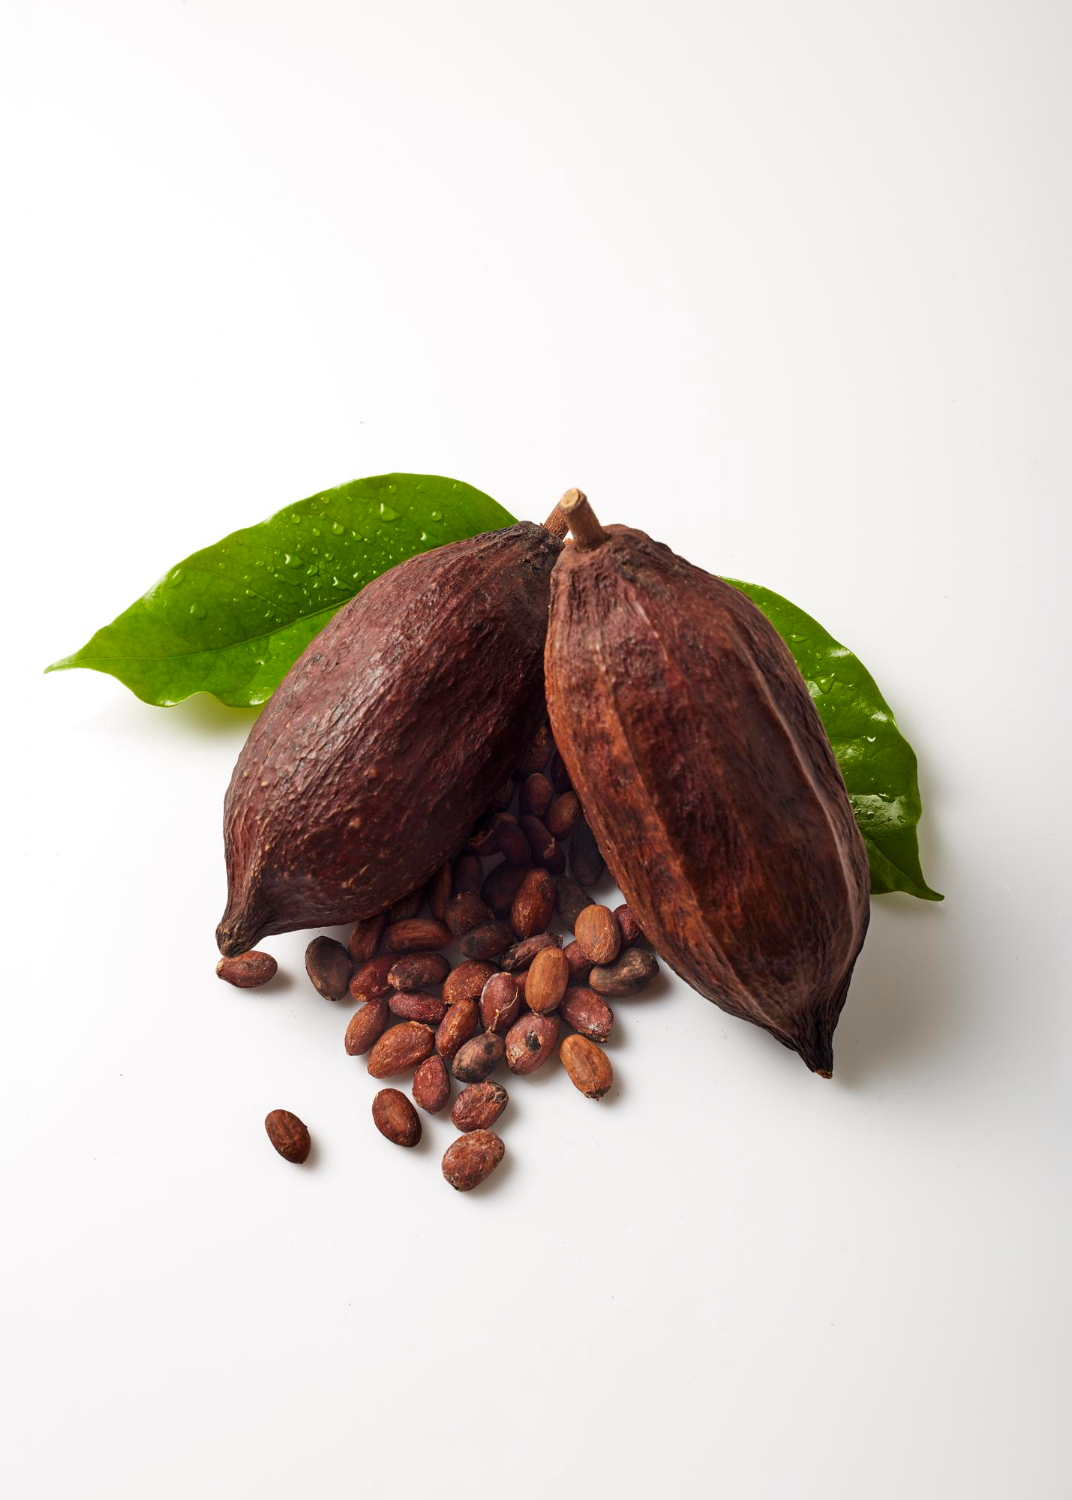 Vainas de cacao con semillas y hojas verdes.